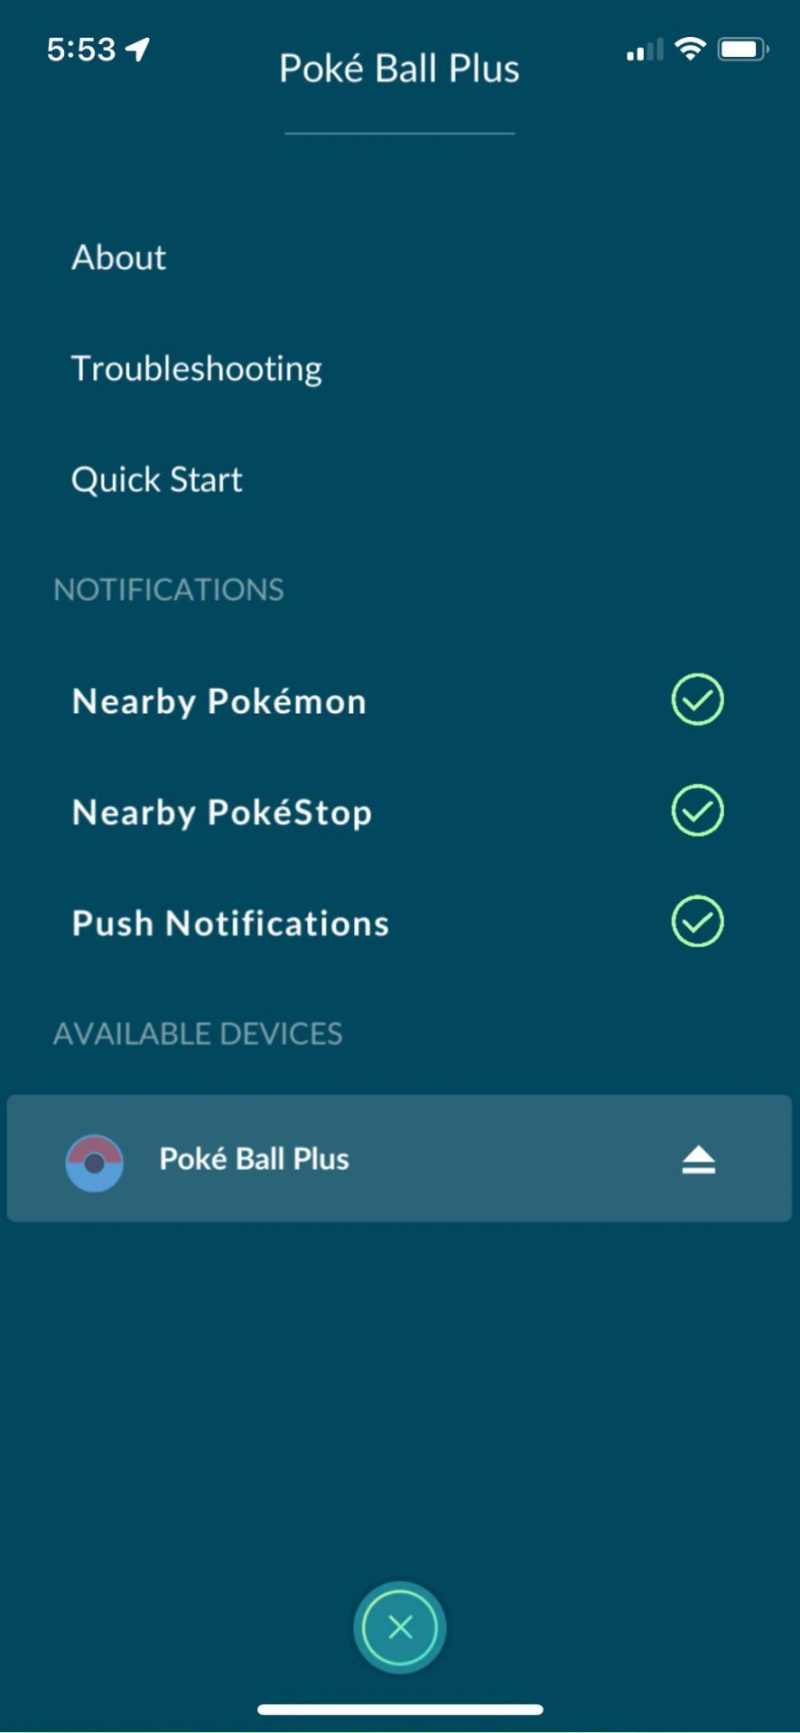   Poke Ball Plus ஐ Pokémon Go உடன் இணைக்கவும், அறிவிப்புகளை நிர்வகிக்க மெனுவைப் பார்க்கவும்